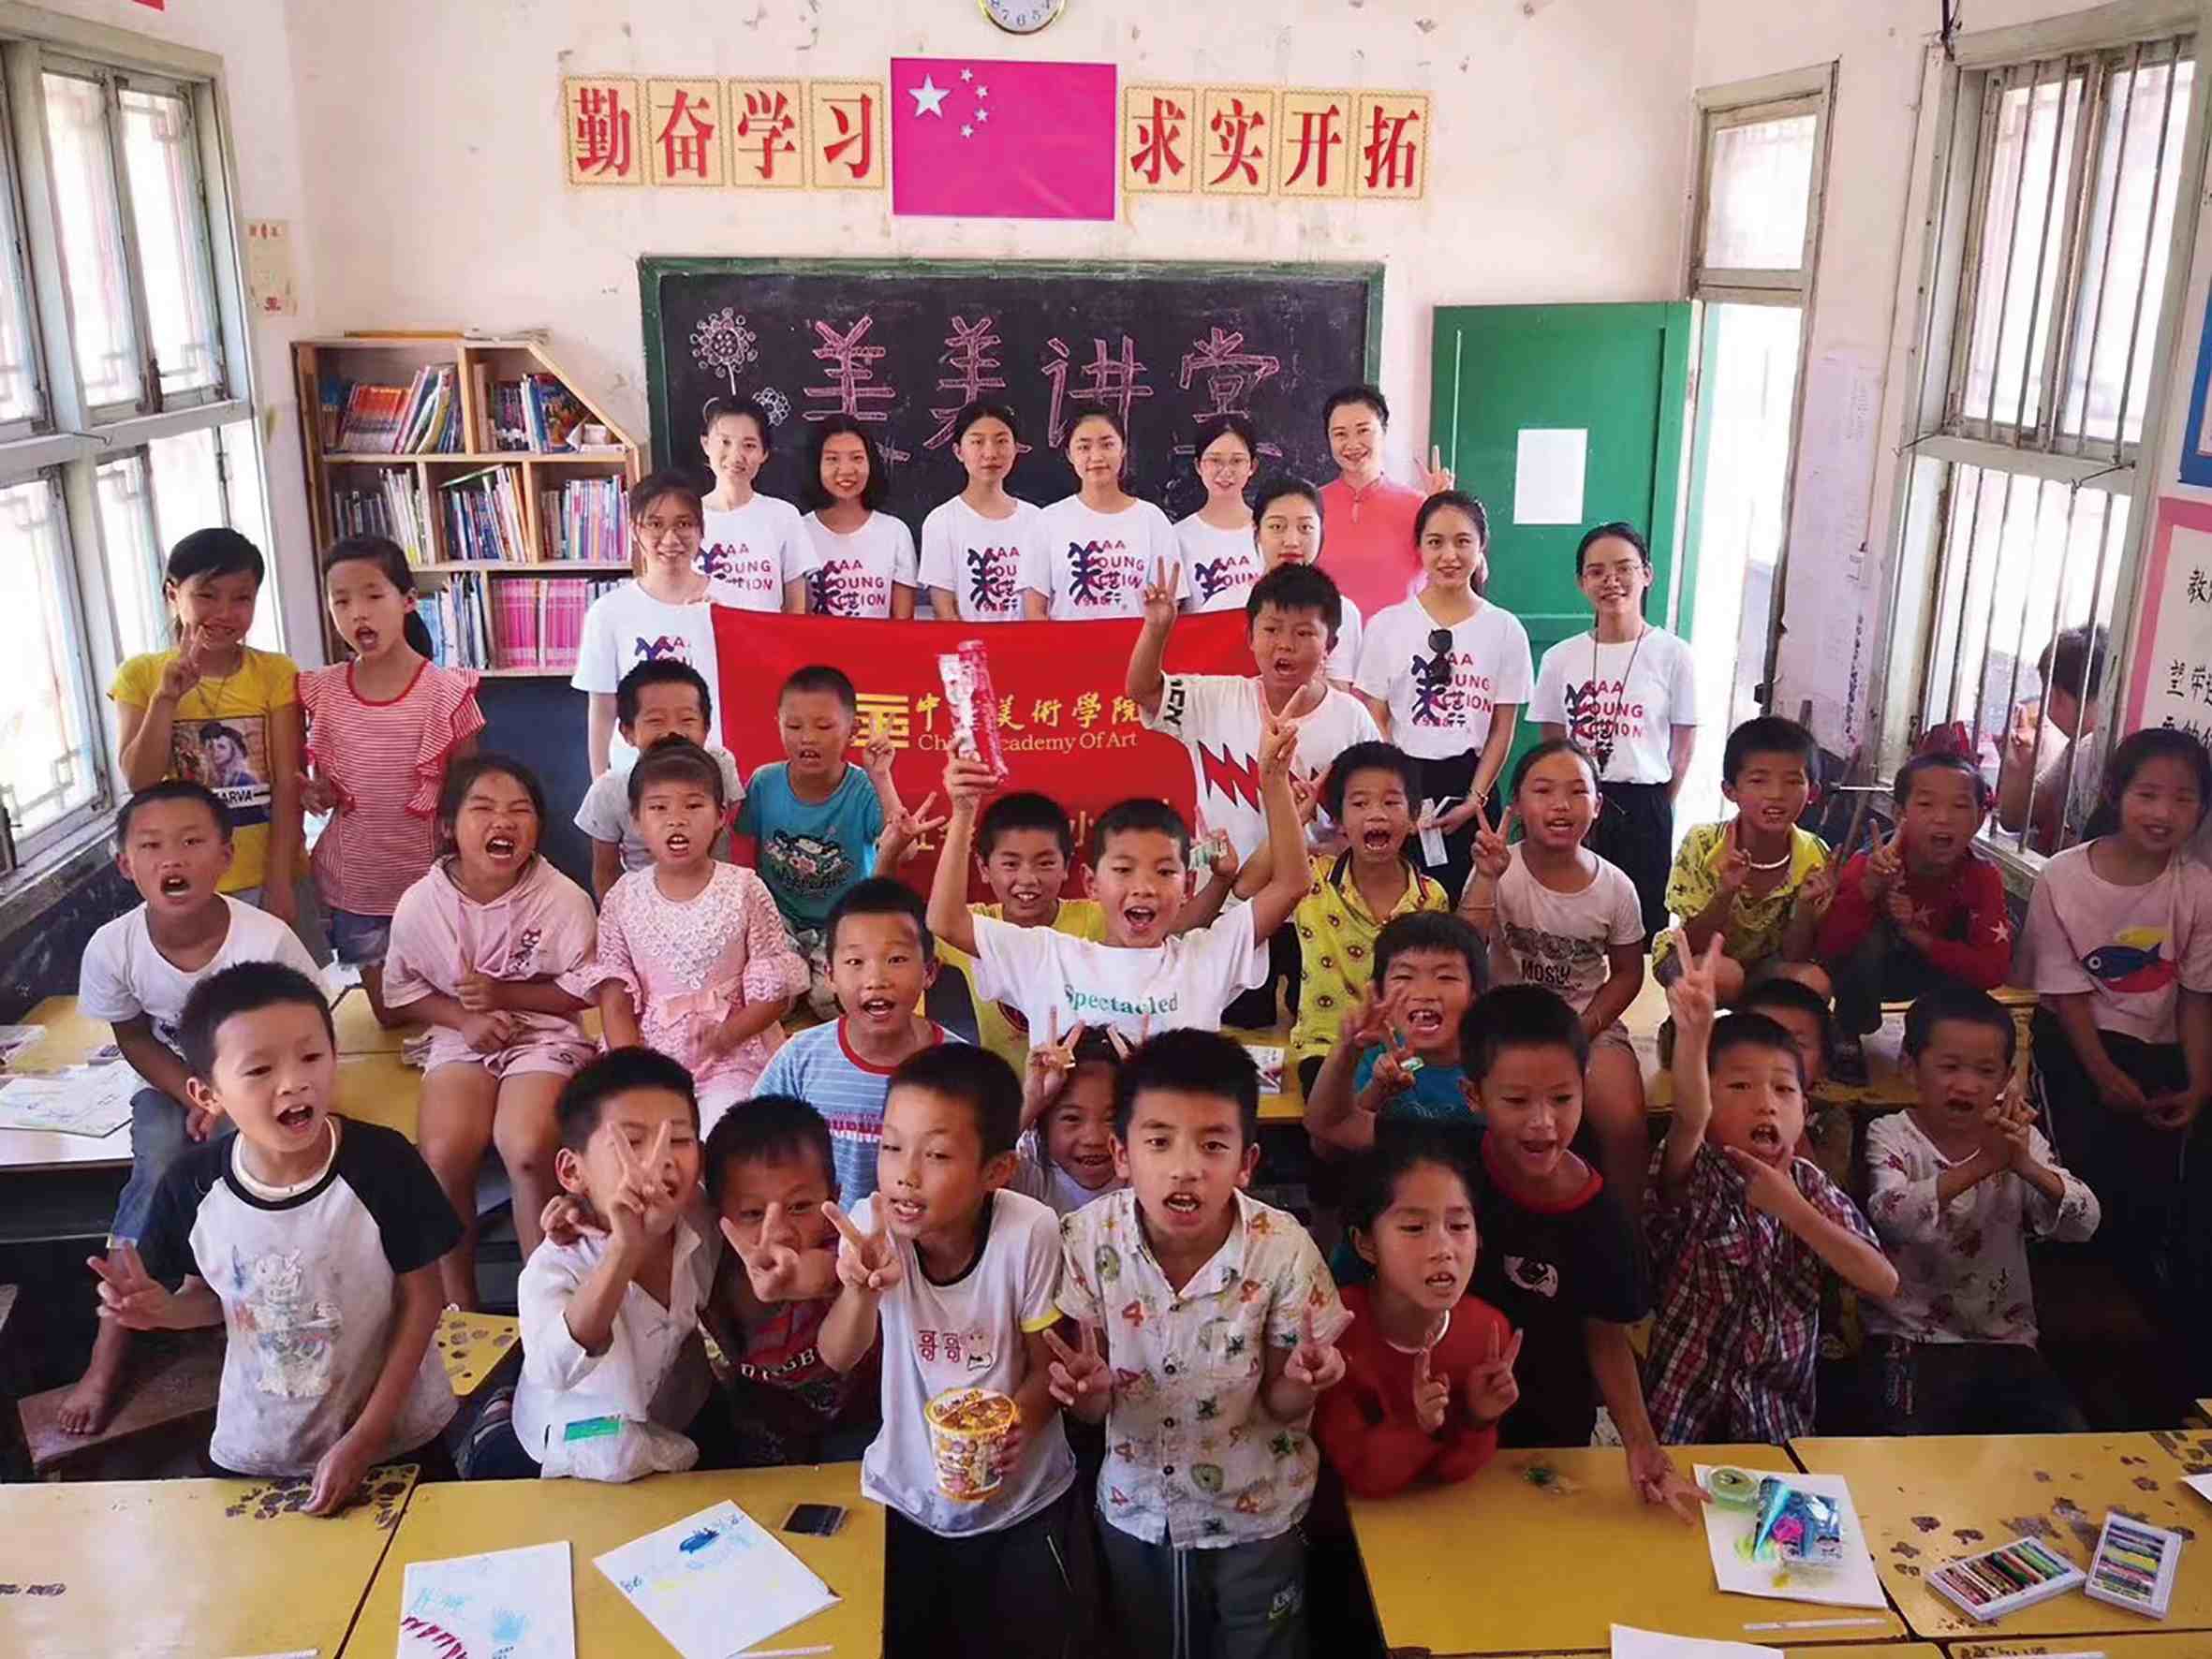 “美美讲堂”在贵州省黔东南岜扒小学开办暑期夏令营的第10年